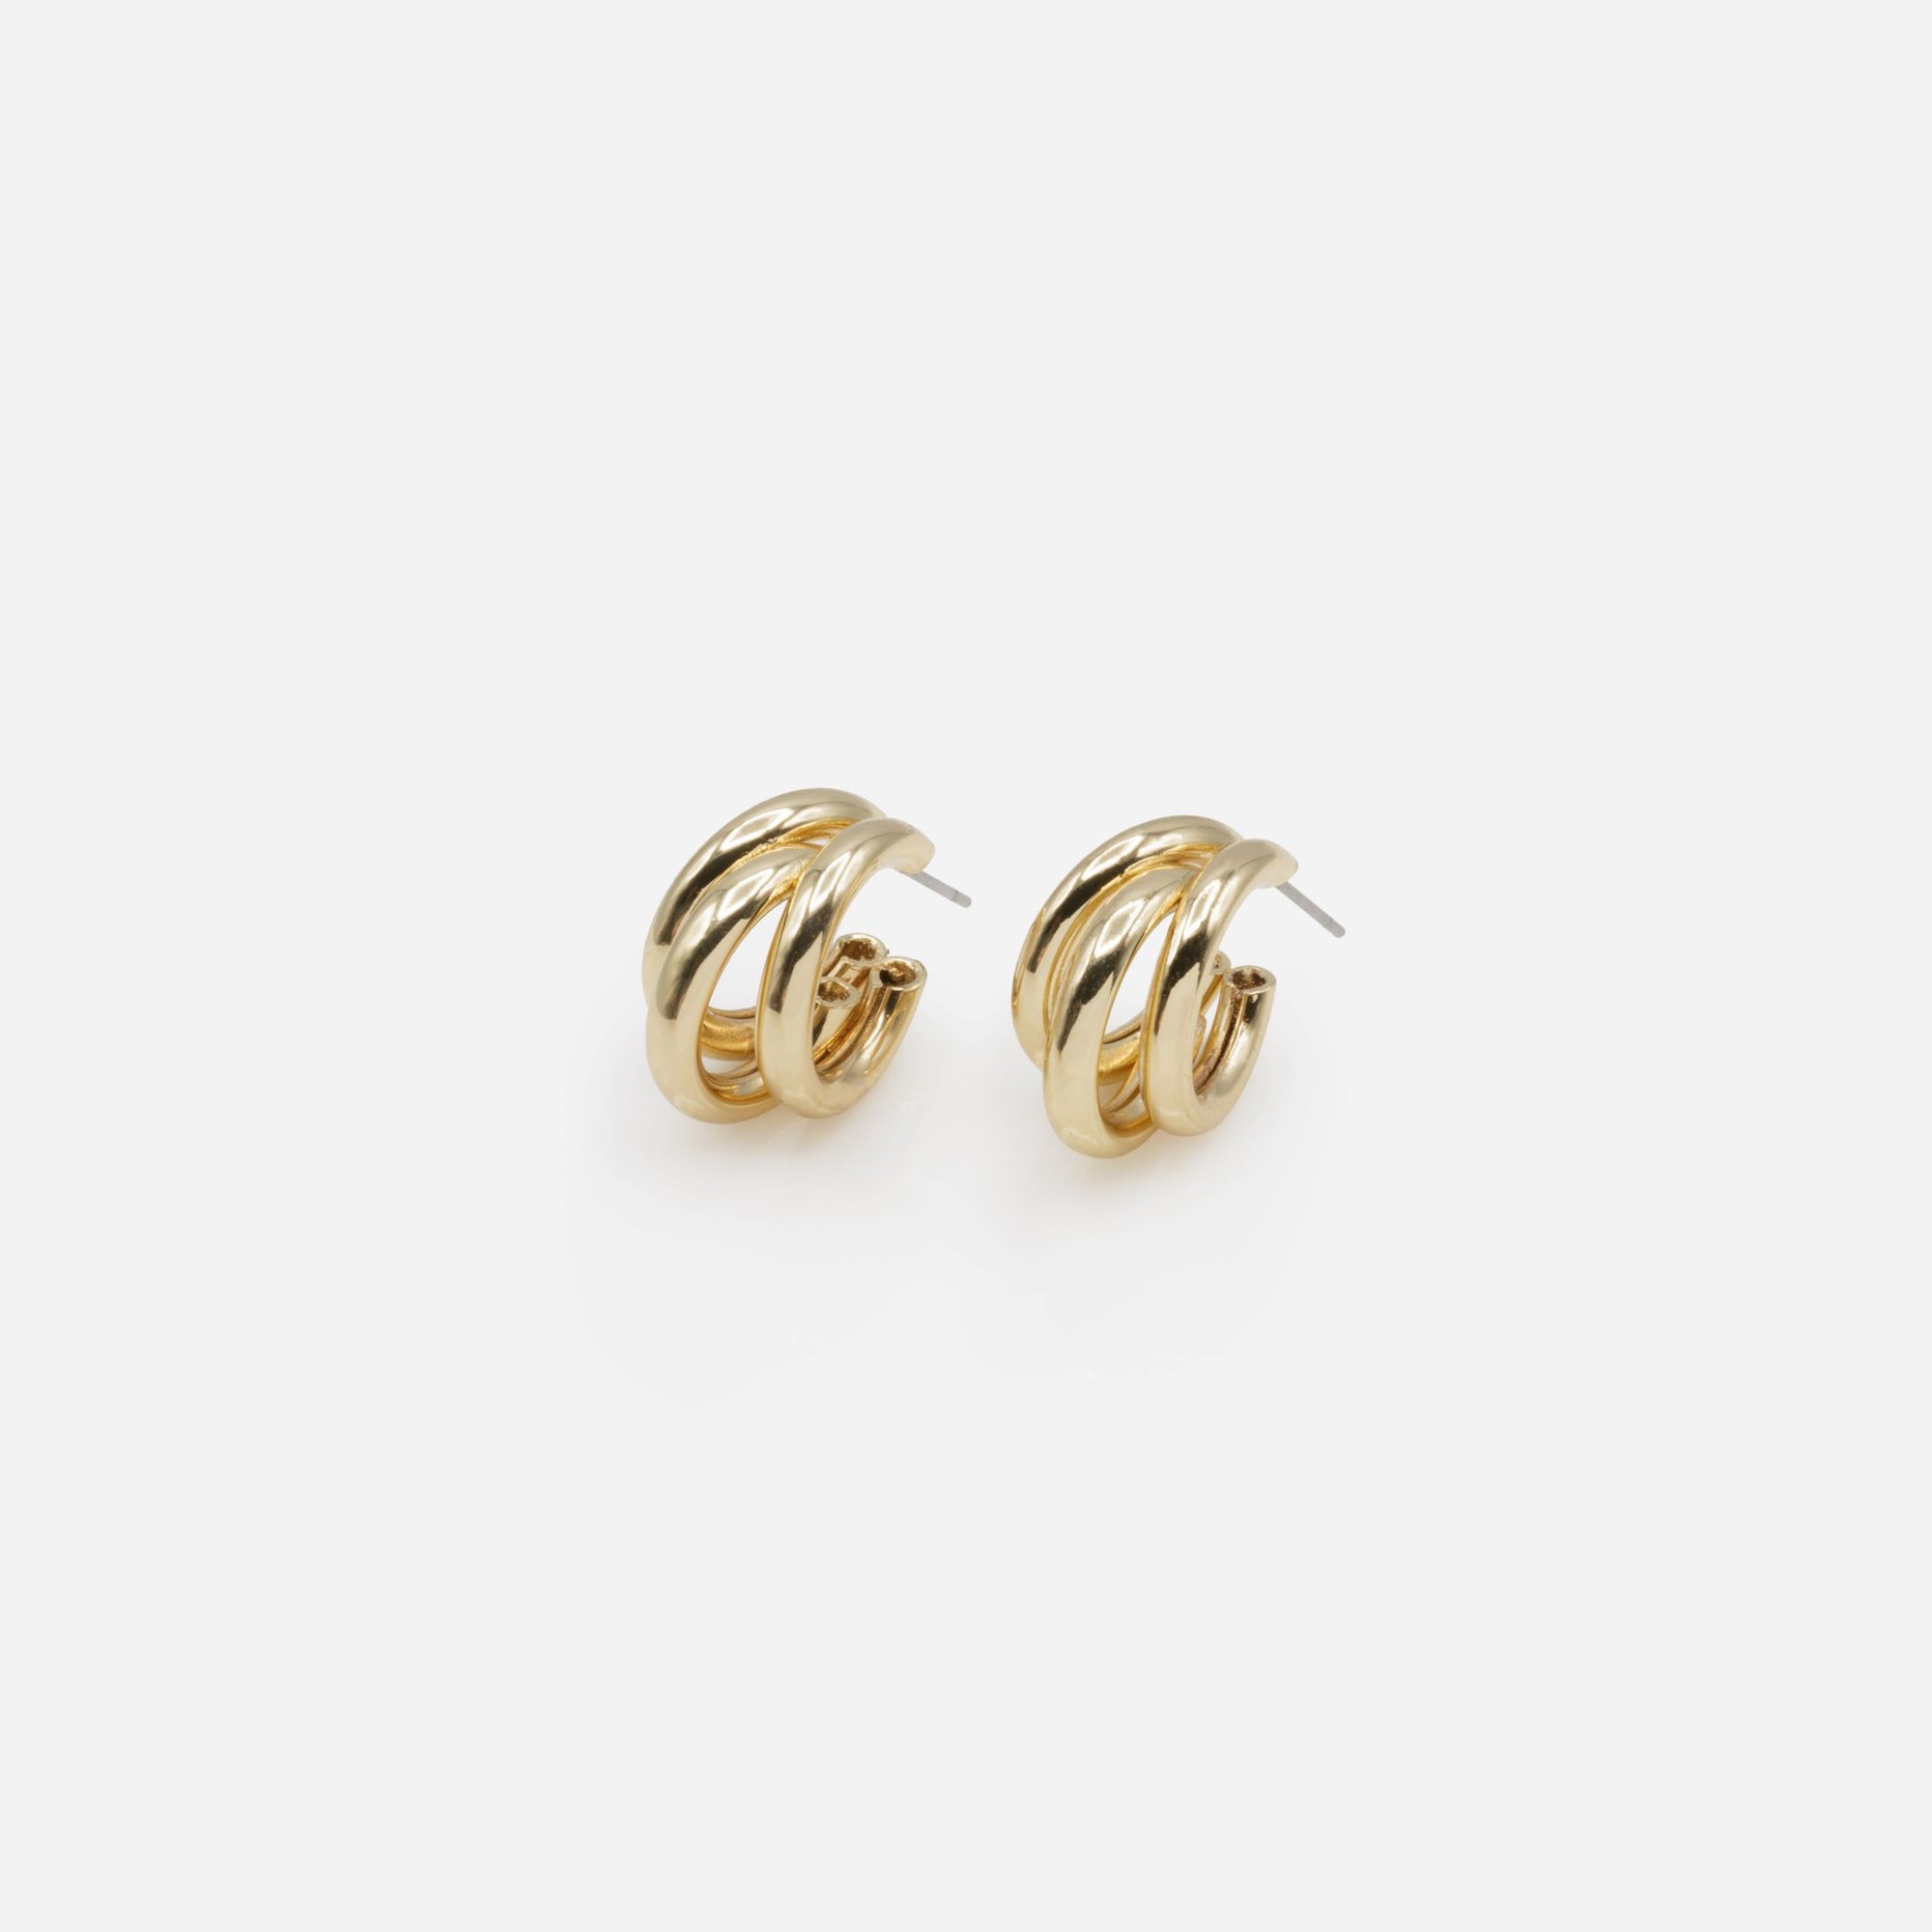 Triple gold hoop earrings